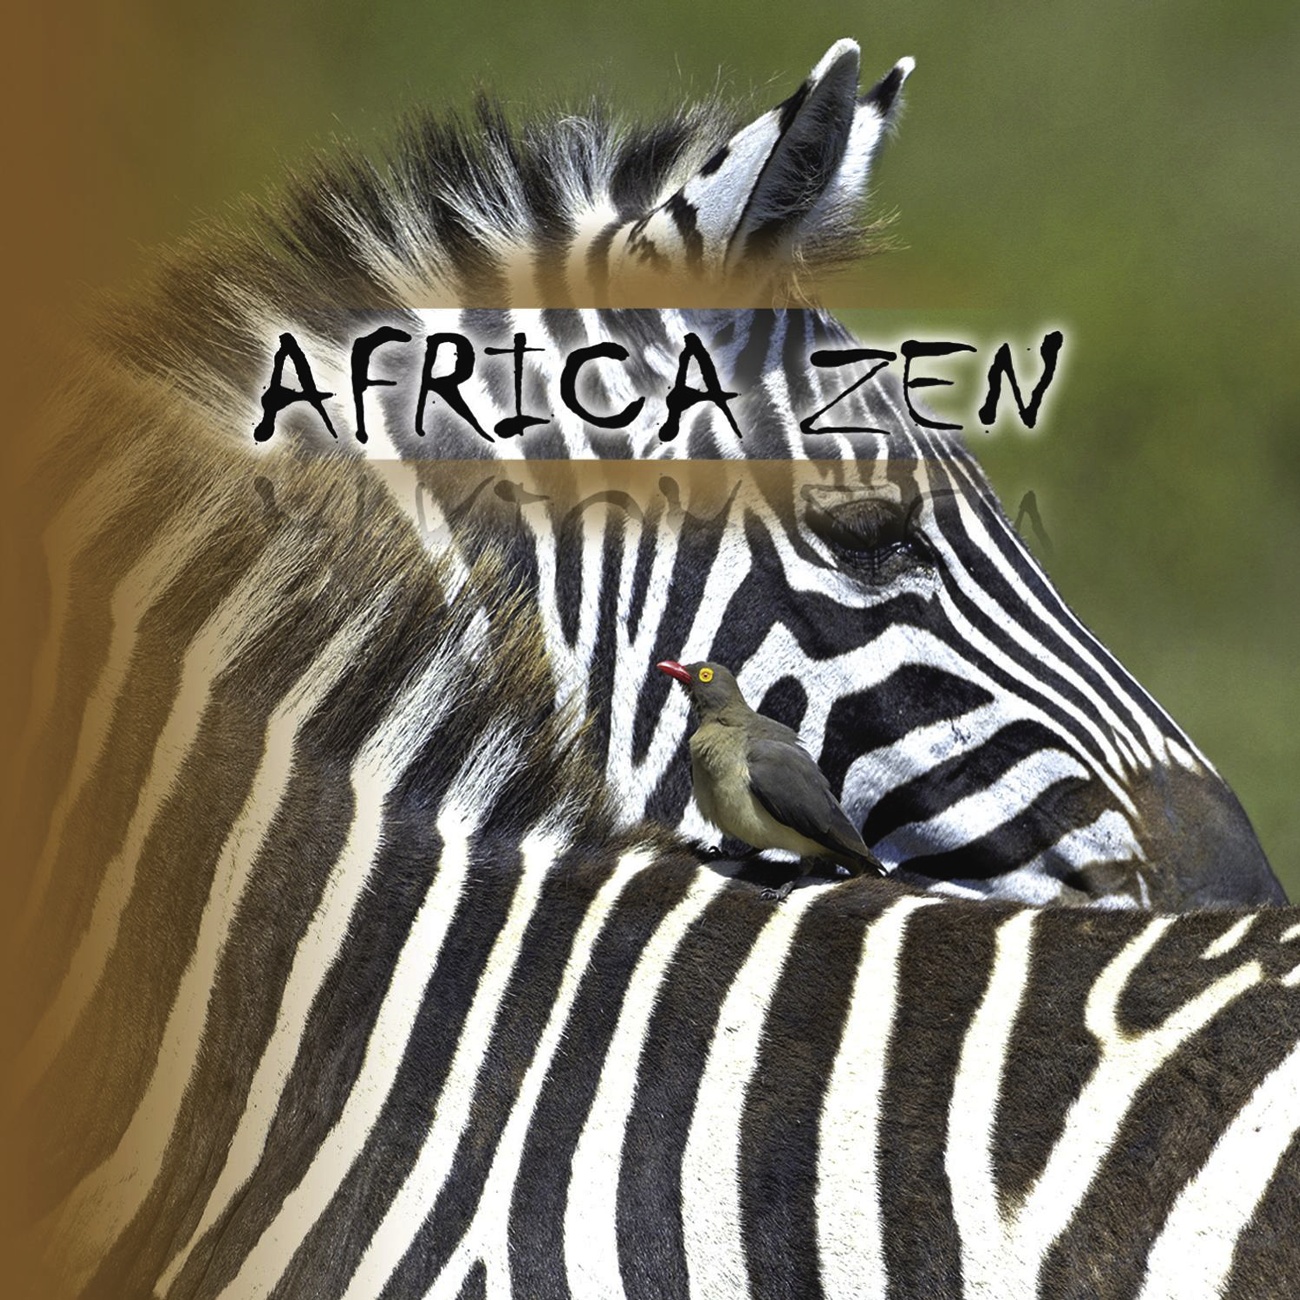 Africa Zen